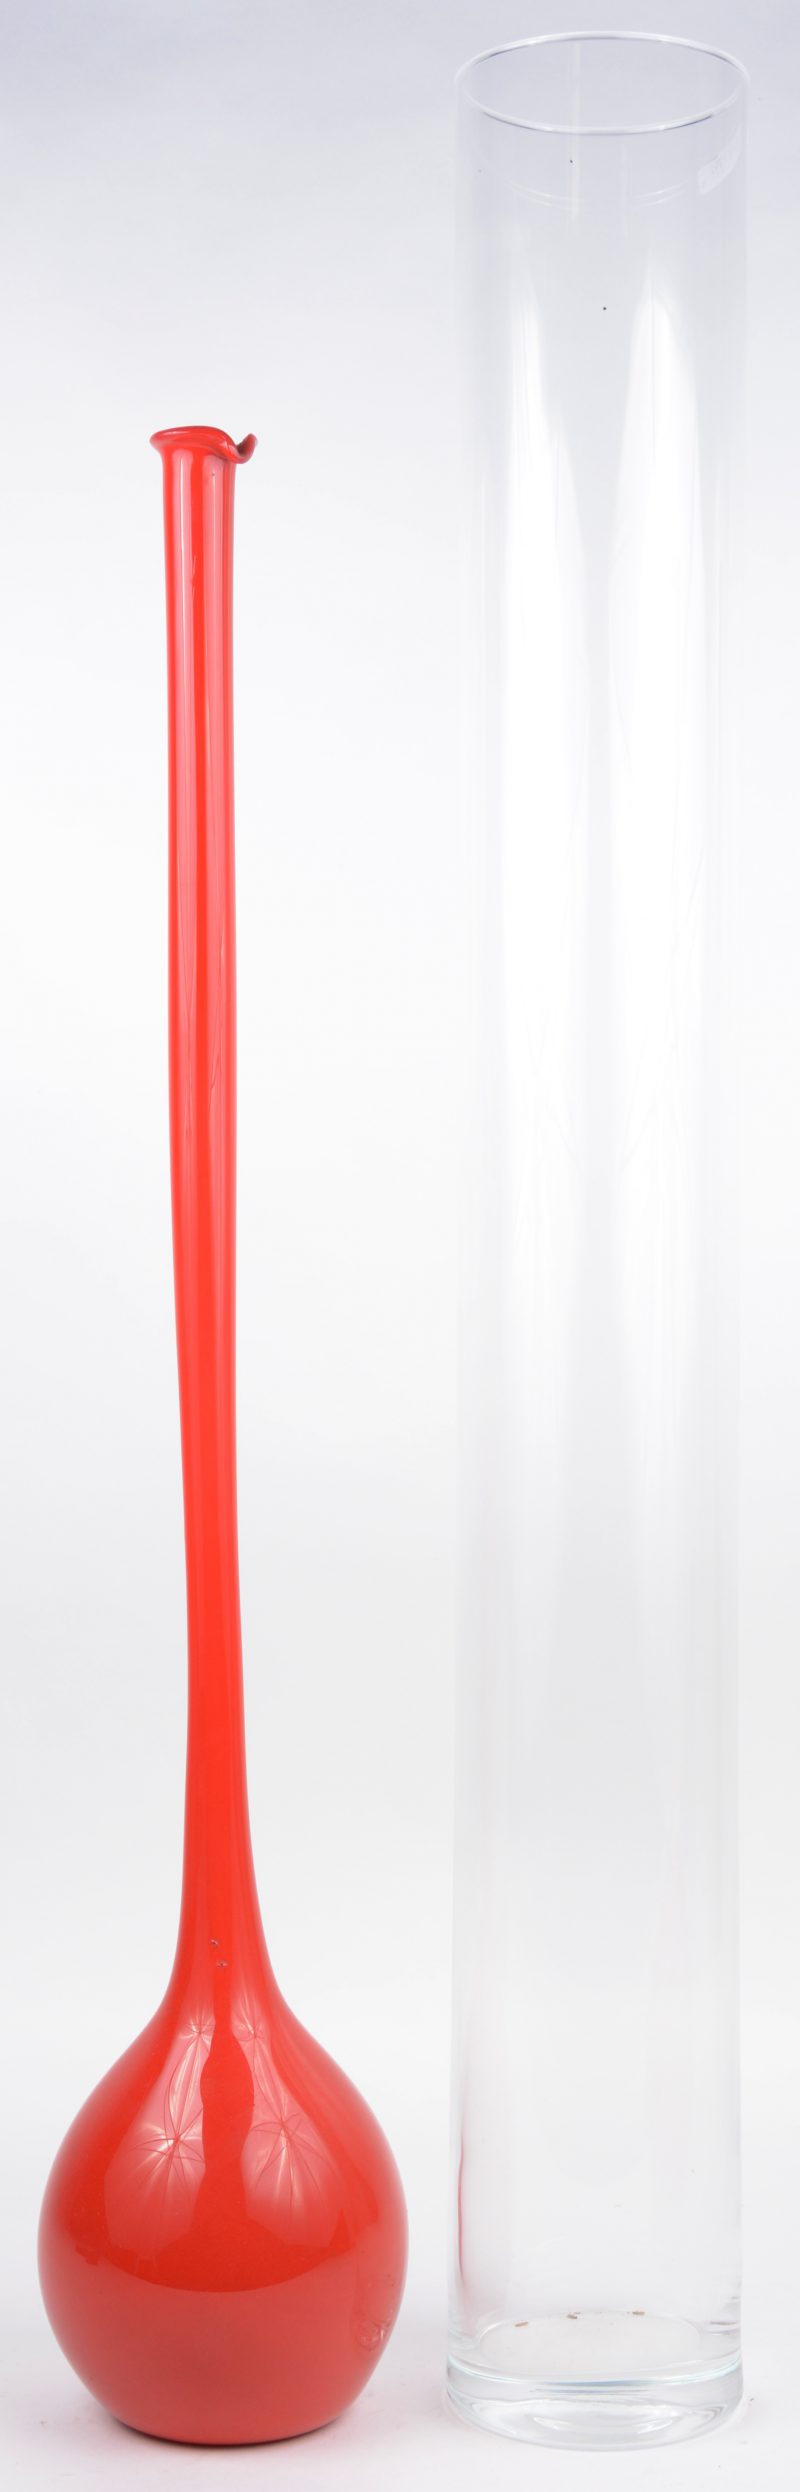 Een lange kleurloos glazen cilindervaas en een rode bolle vaas met lange hals.